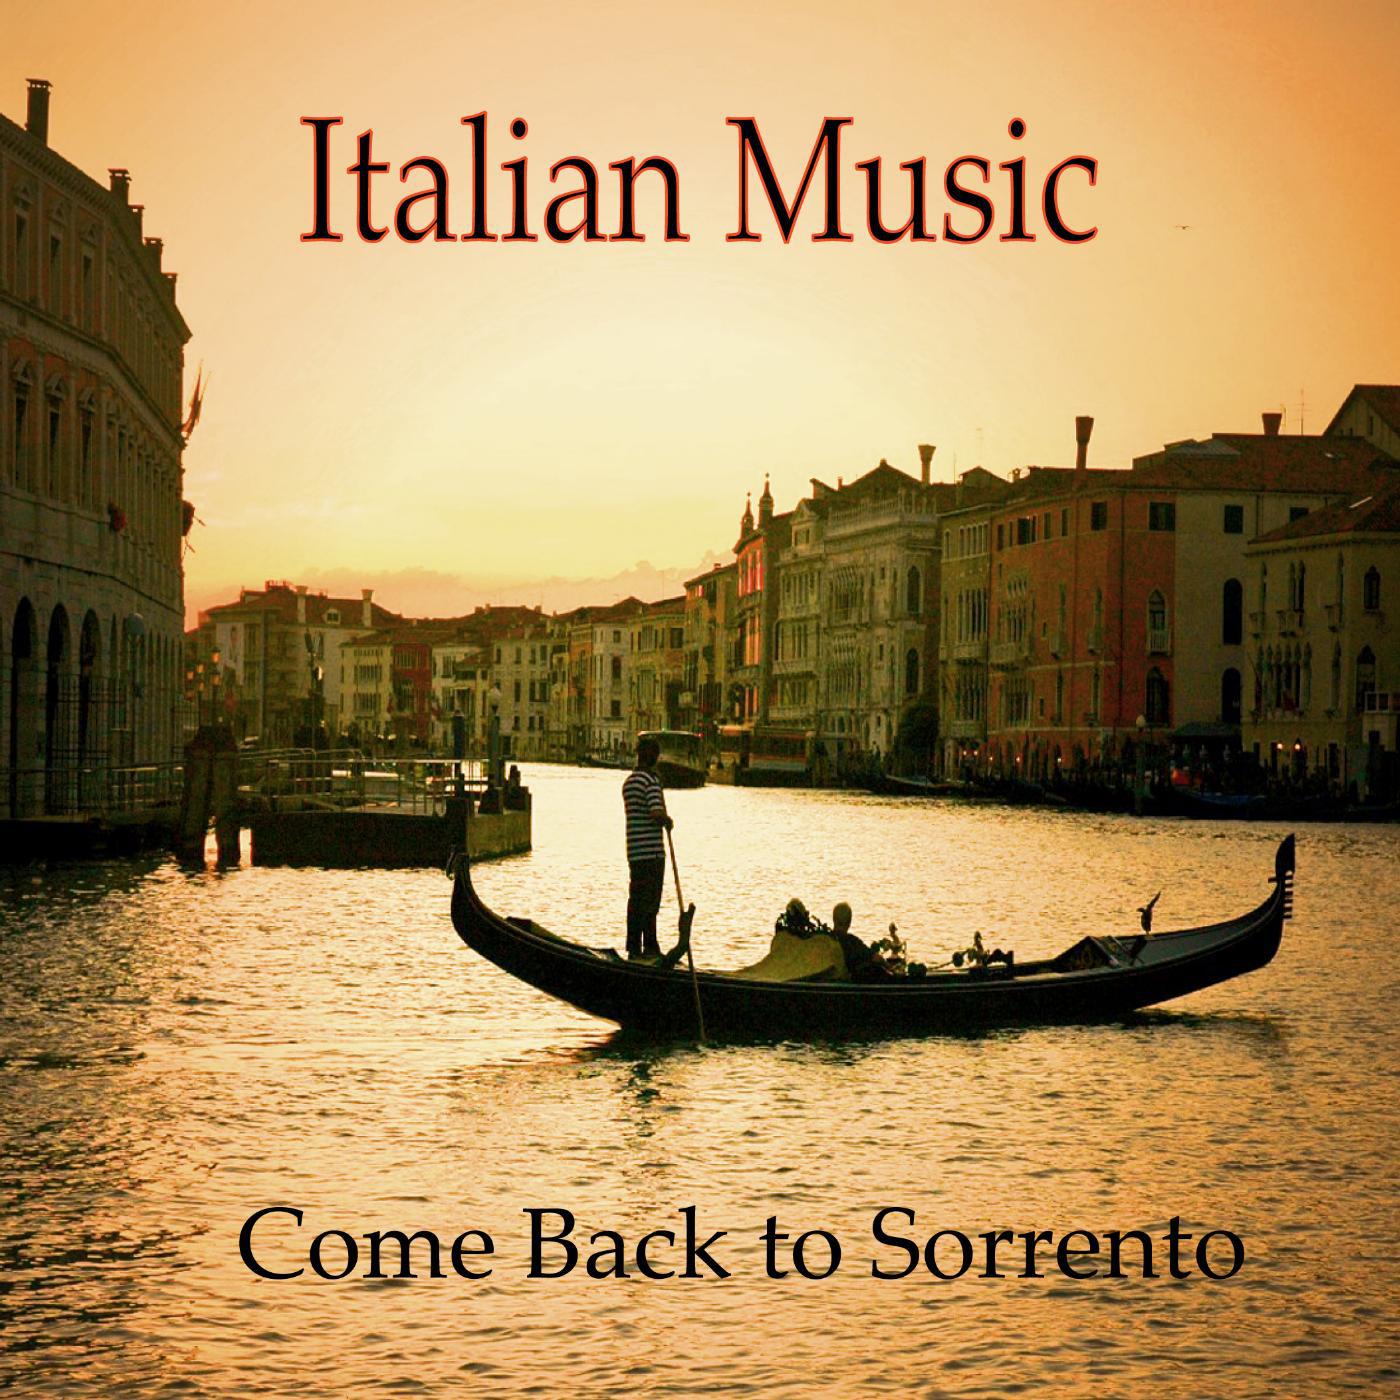 Музыка италии слушать. Обложки итальянской музыки. Итальянский вечер. Италия обложка. Музыкальная культура Италии.